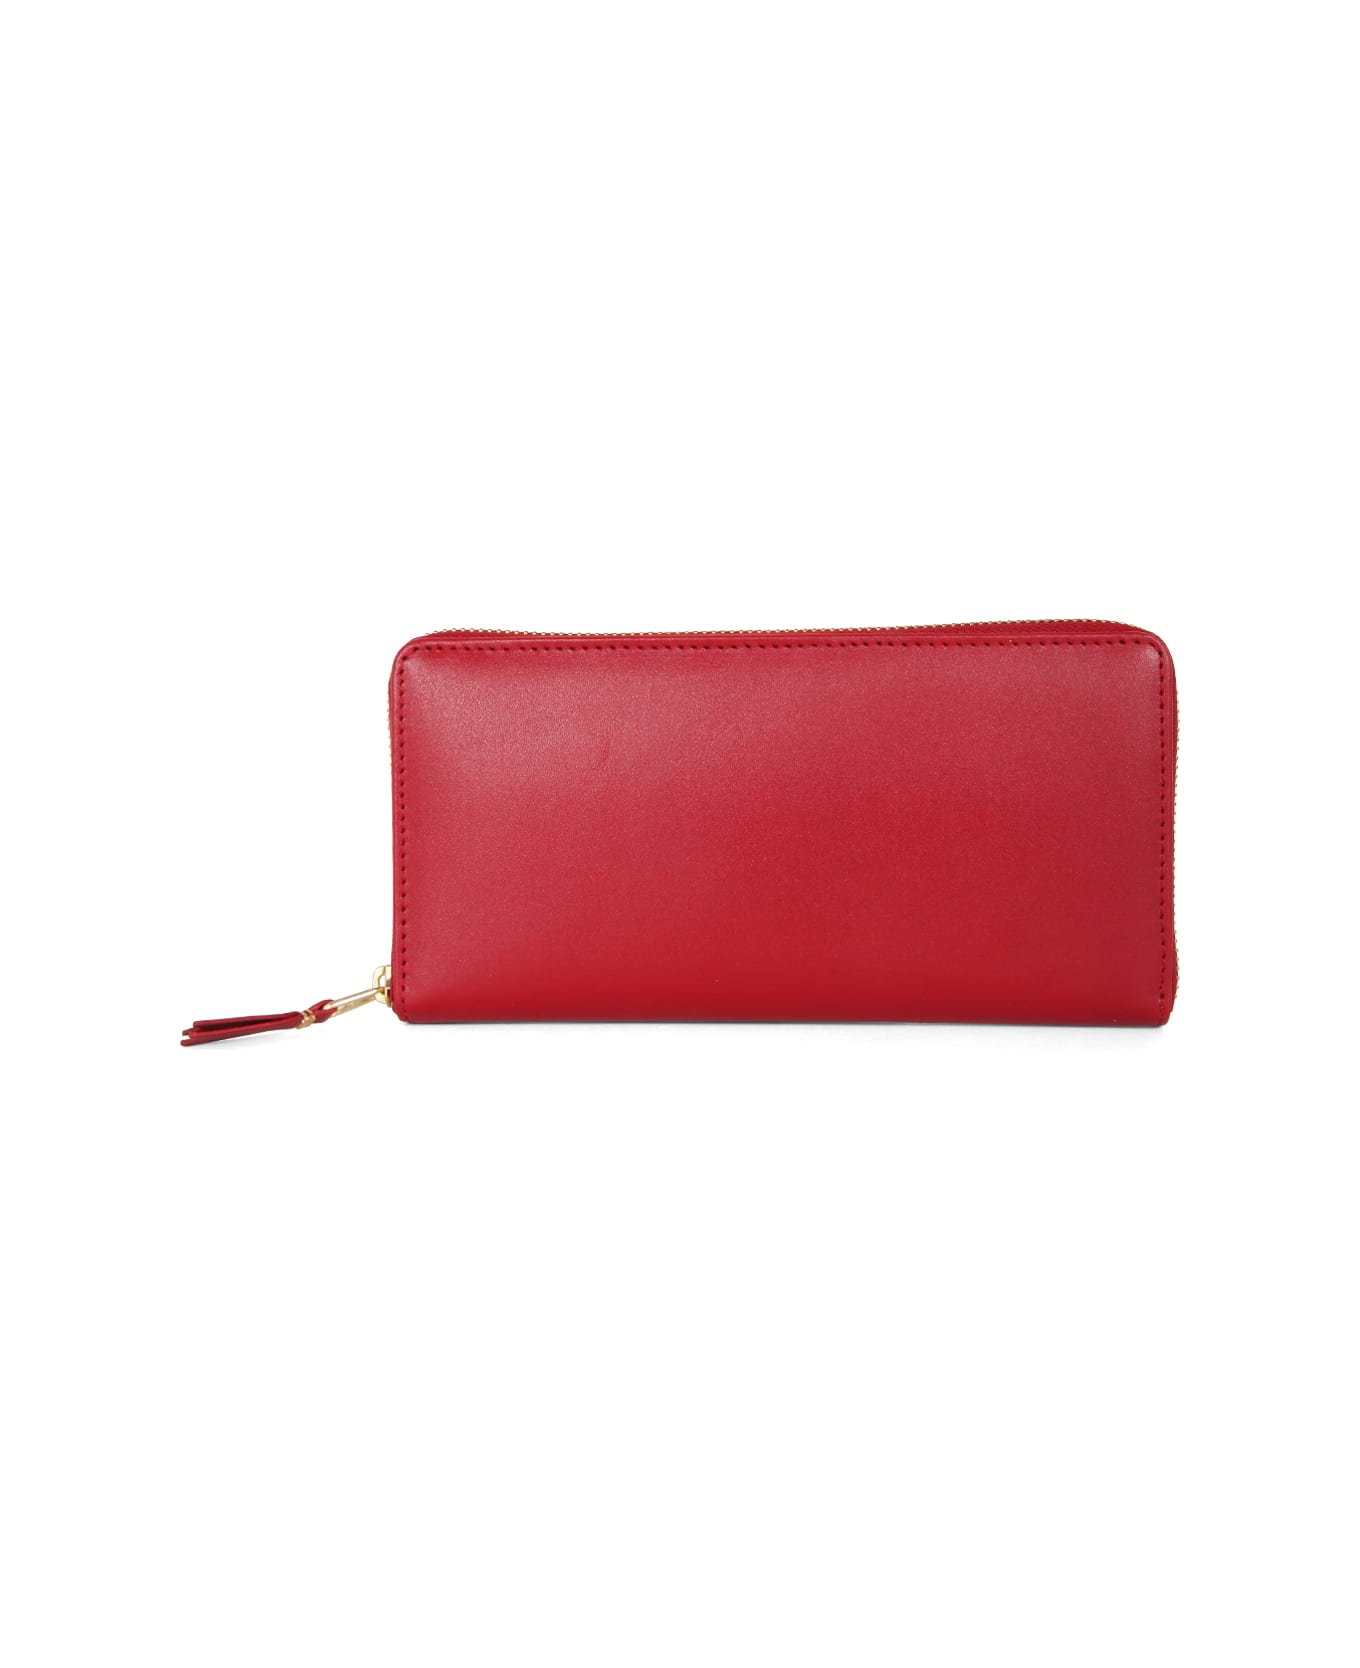 Comme des Garçons Wallet Classic Line Wallet - Red Red 財布